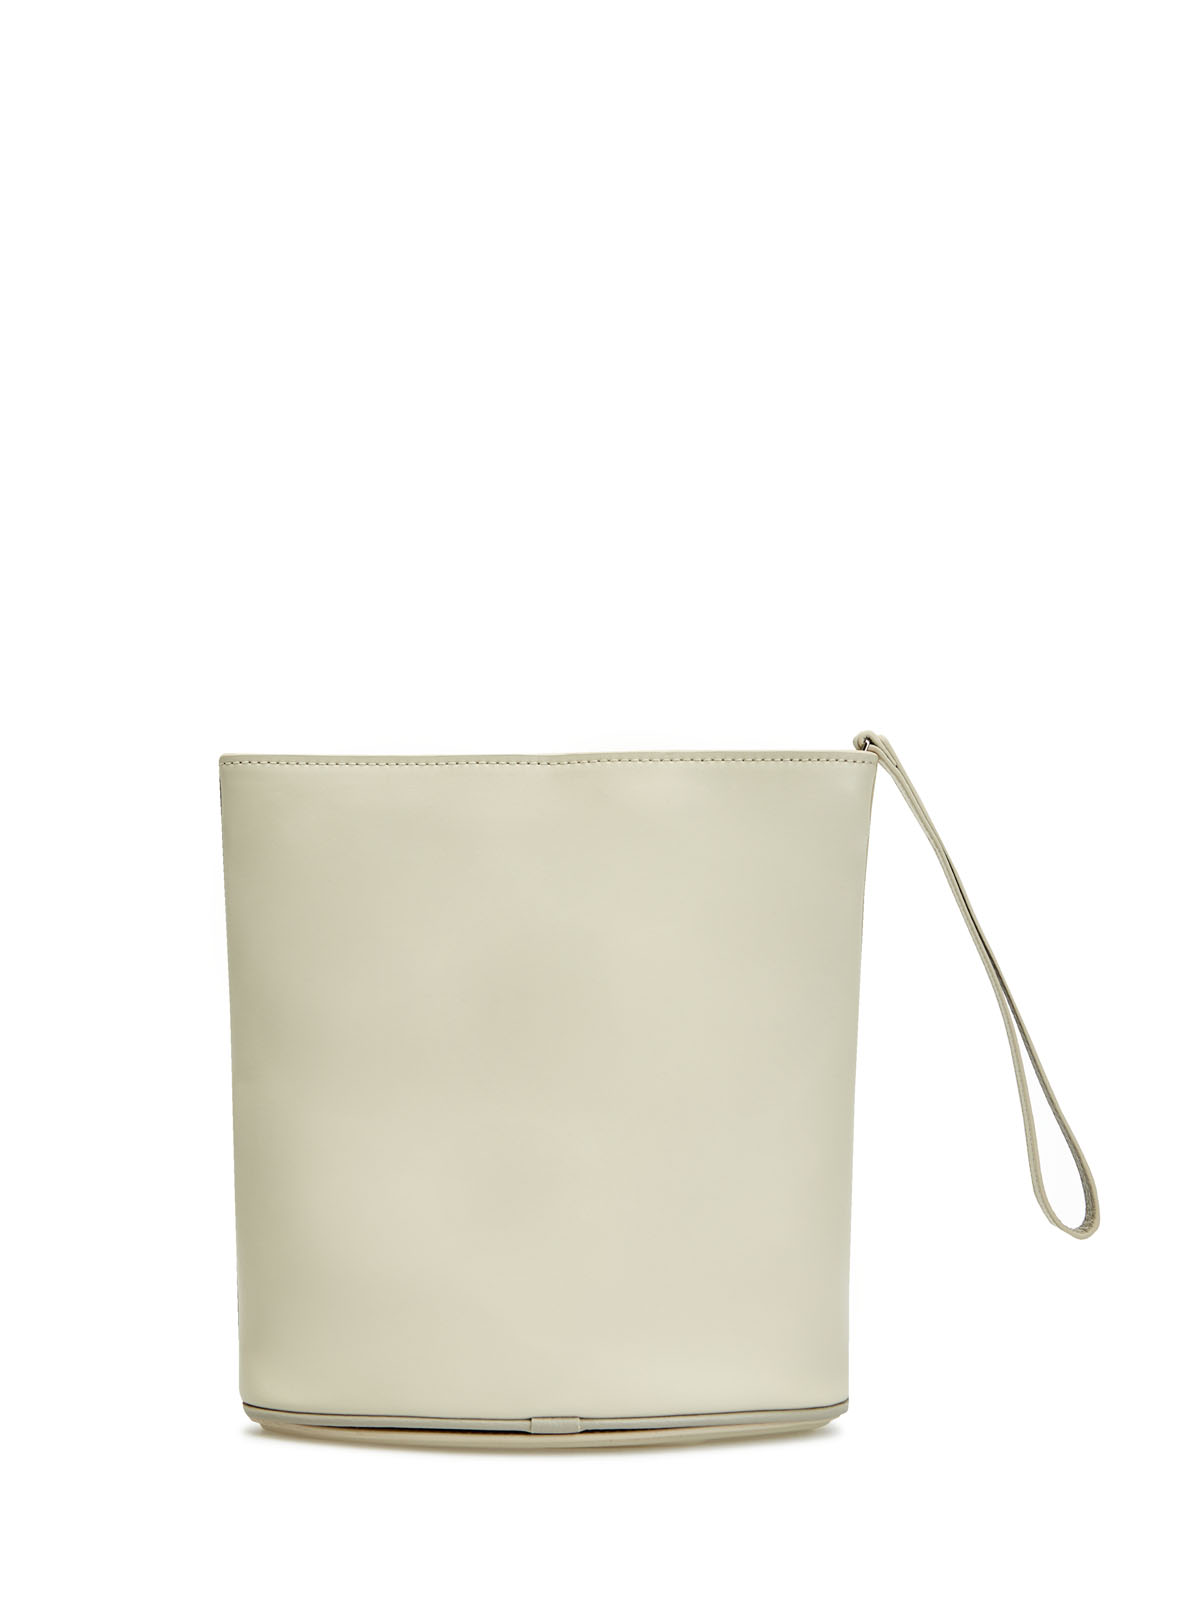 Кожаный клатч Odd Pouch c рельефным логотипом DIESEL, цвет бежевый, размер 50;52 - фото 5